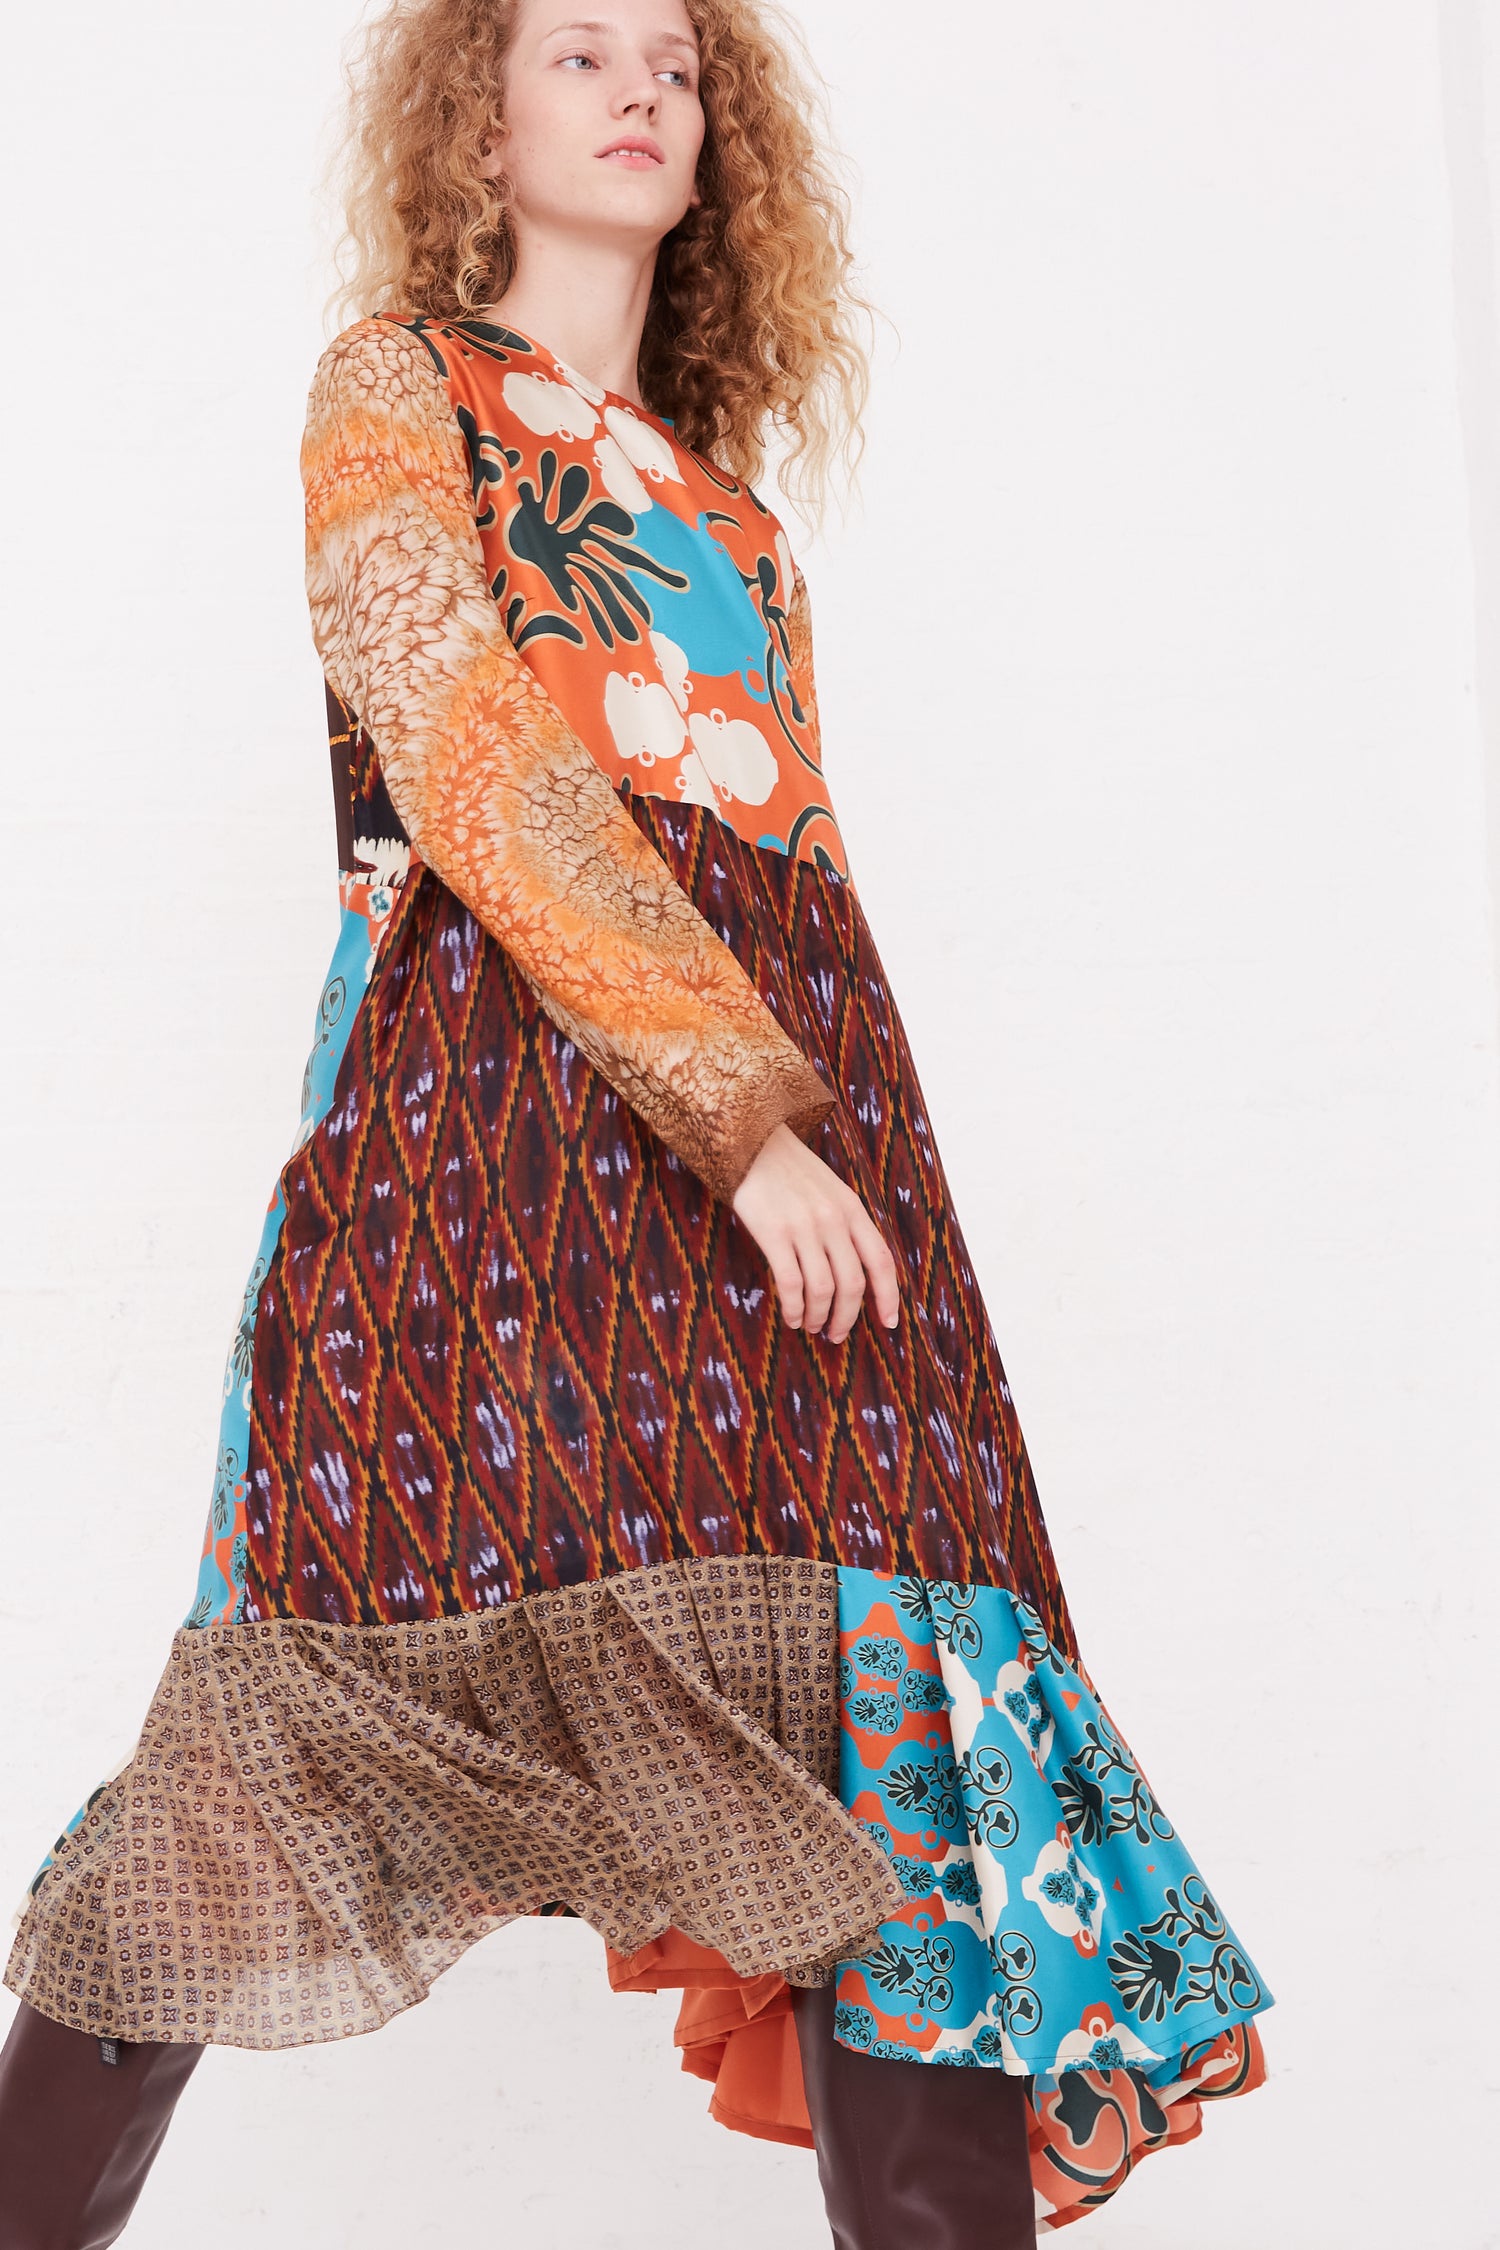 A woman in a Bettina Bakdal Silk Vintage Scarves Lena Hannah Dress - M.